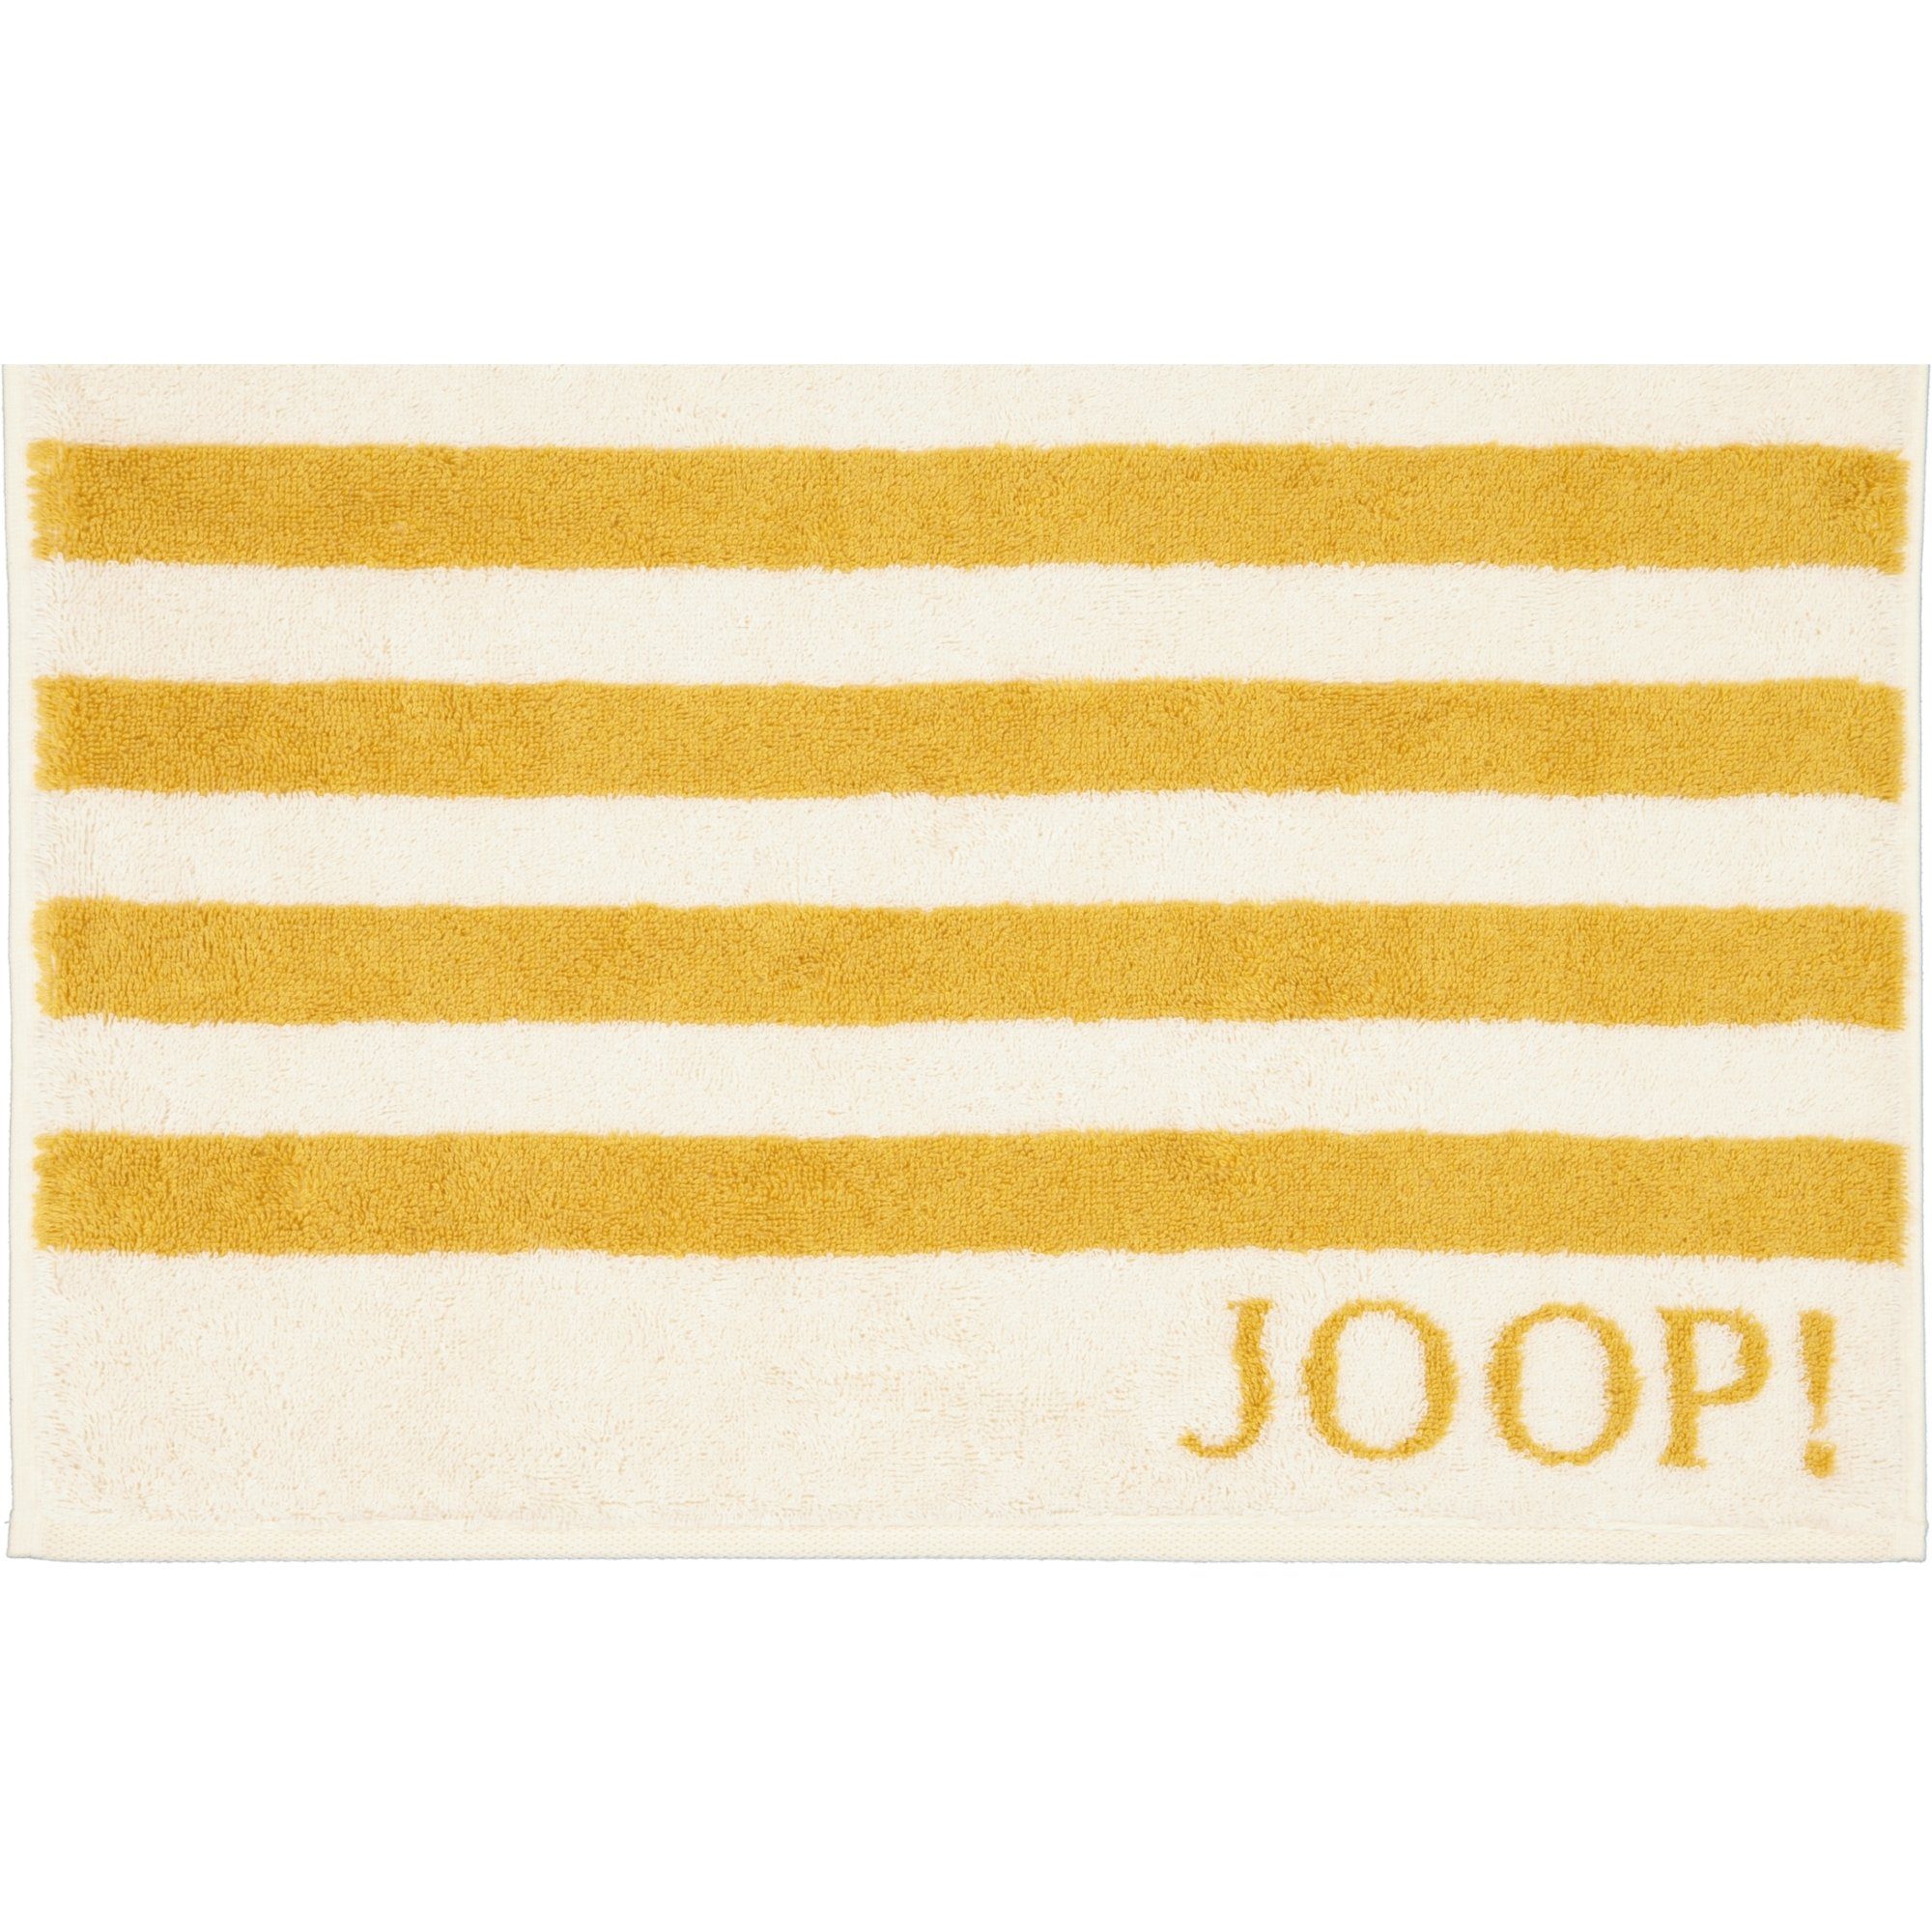 unbekannt Handtücher 100% Joop! Stripes Classic Baumwolle 1610,